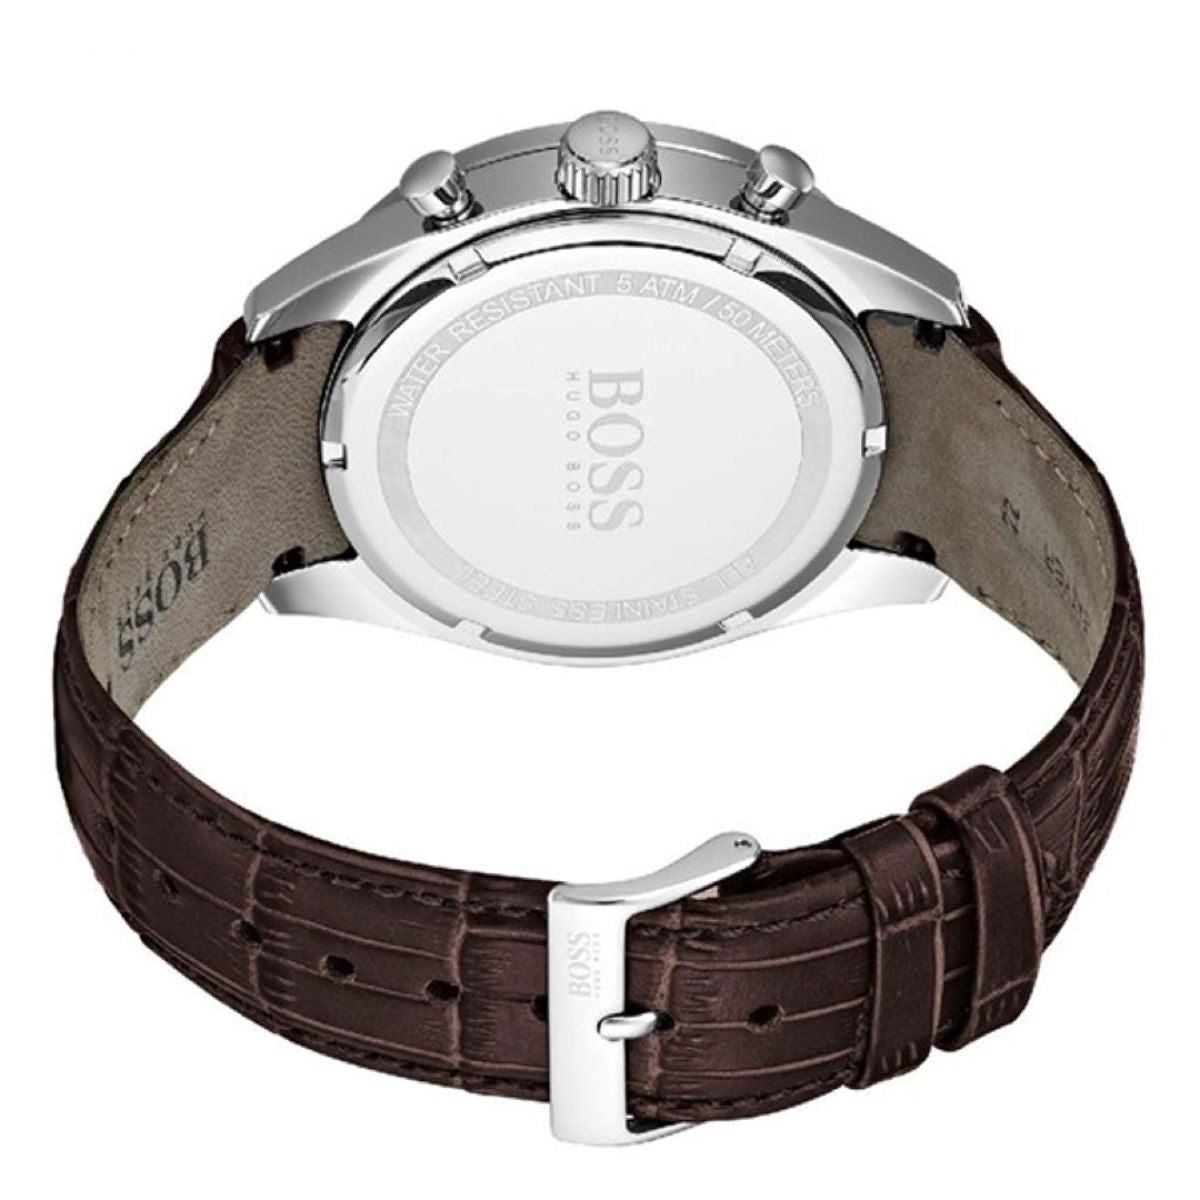 Hugo Boss 1513629 Heren Horloge 44mm 5 ATM